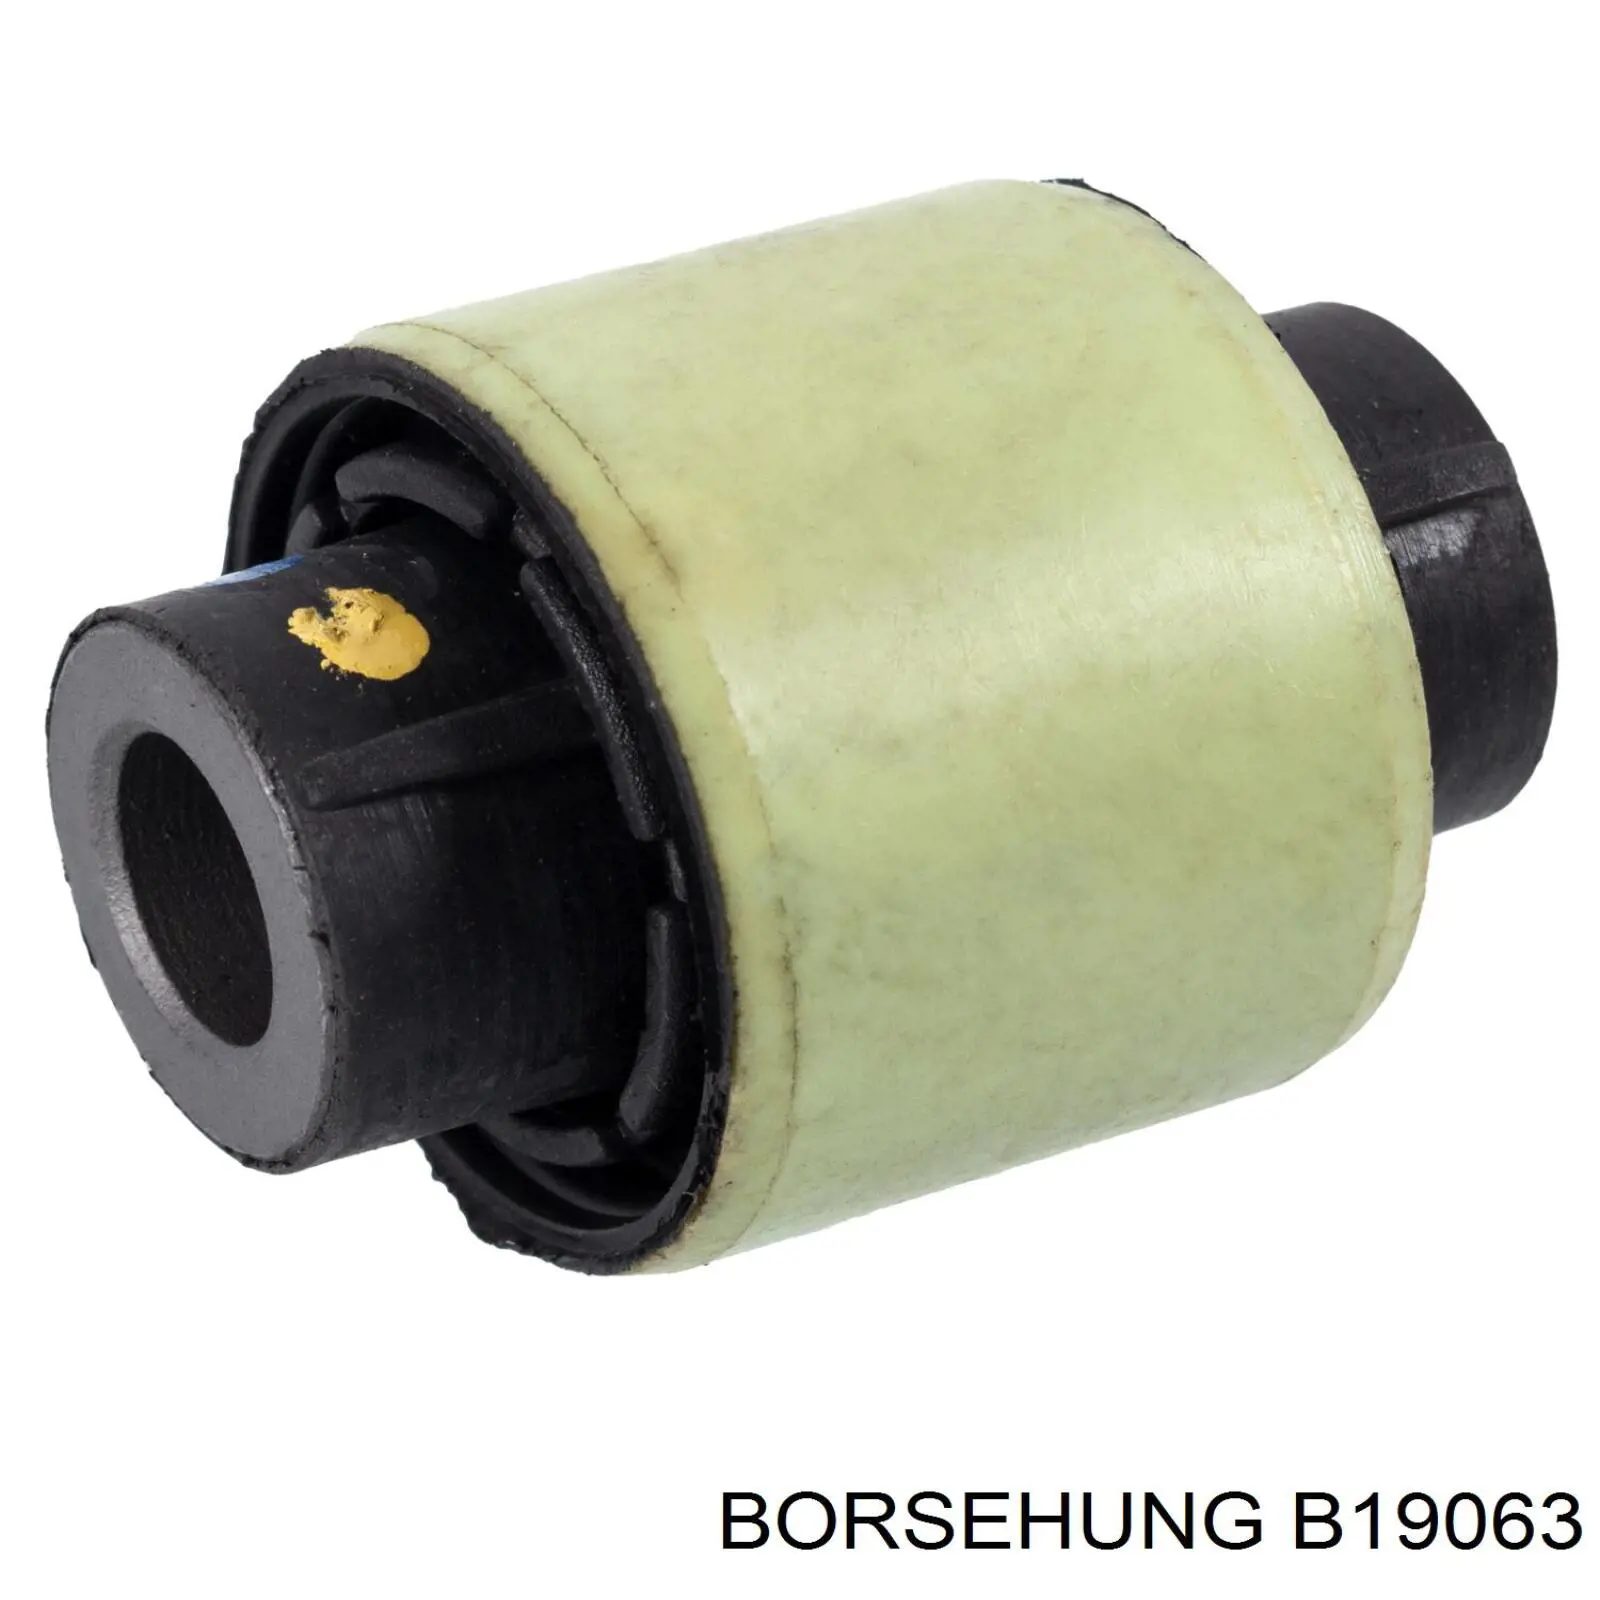 B19063 Borsehung suspensión, brazo oscilante trasero inferior